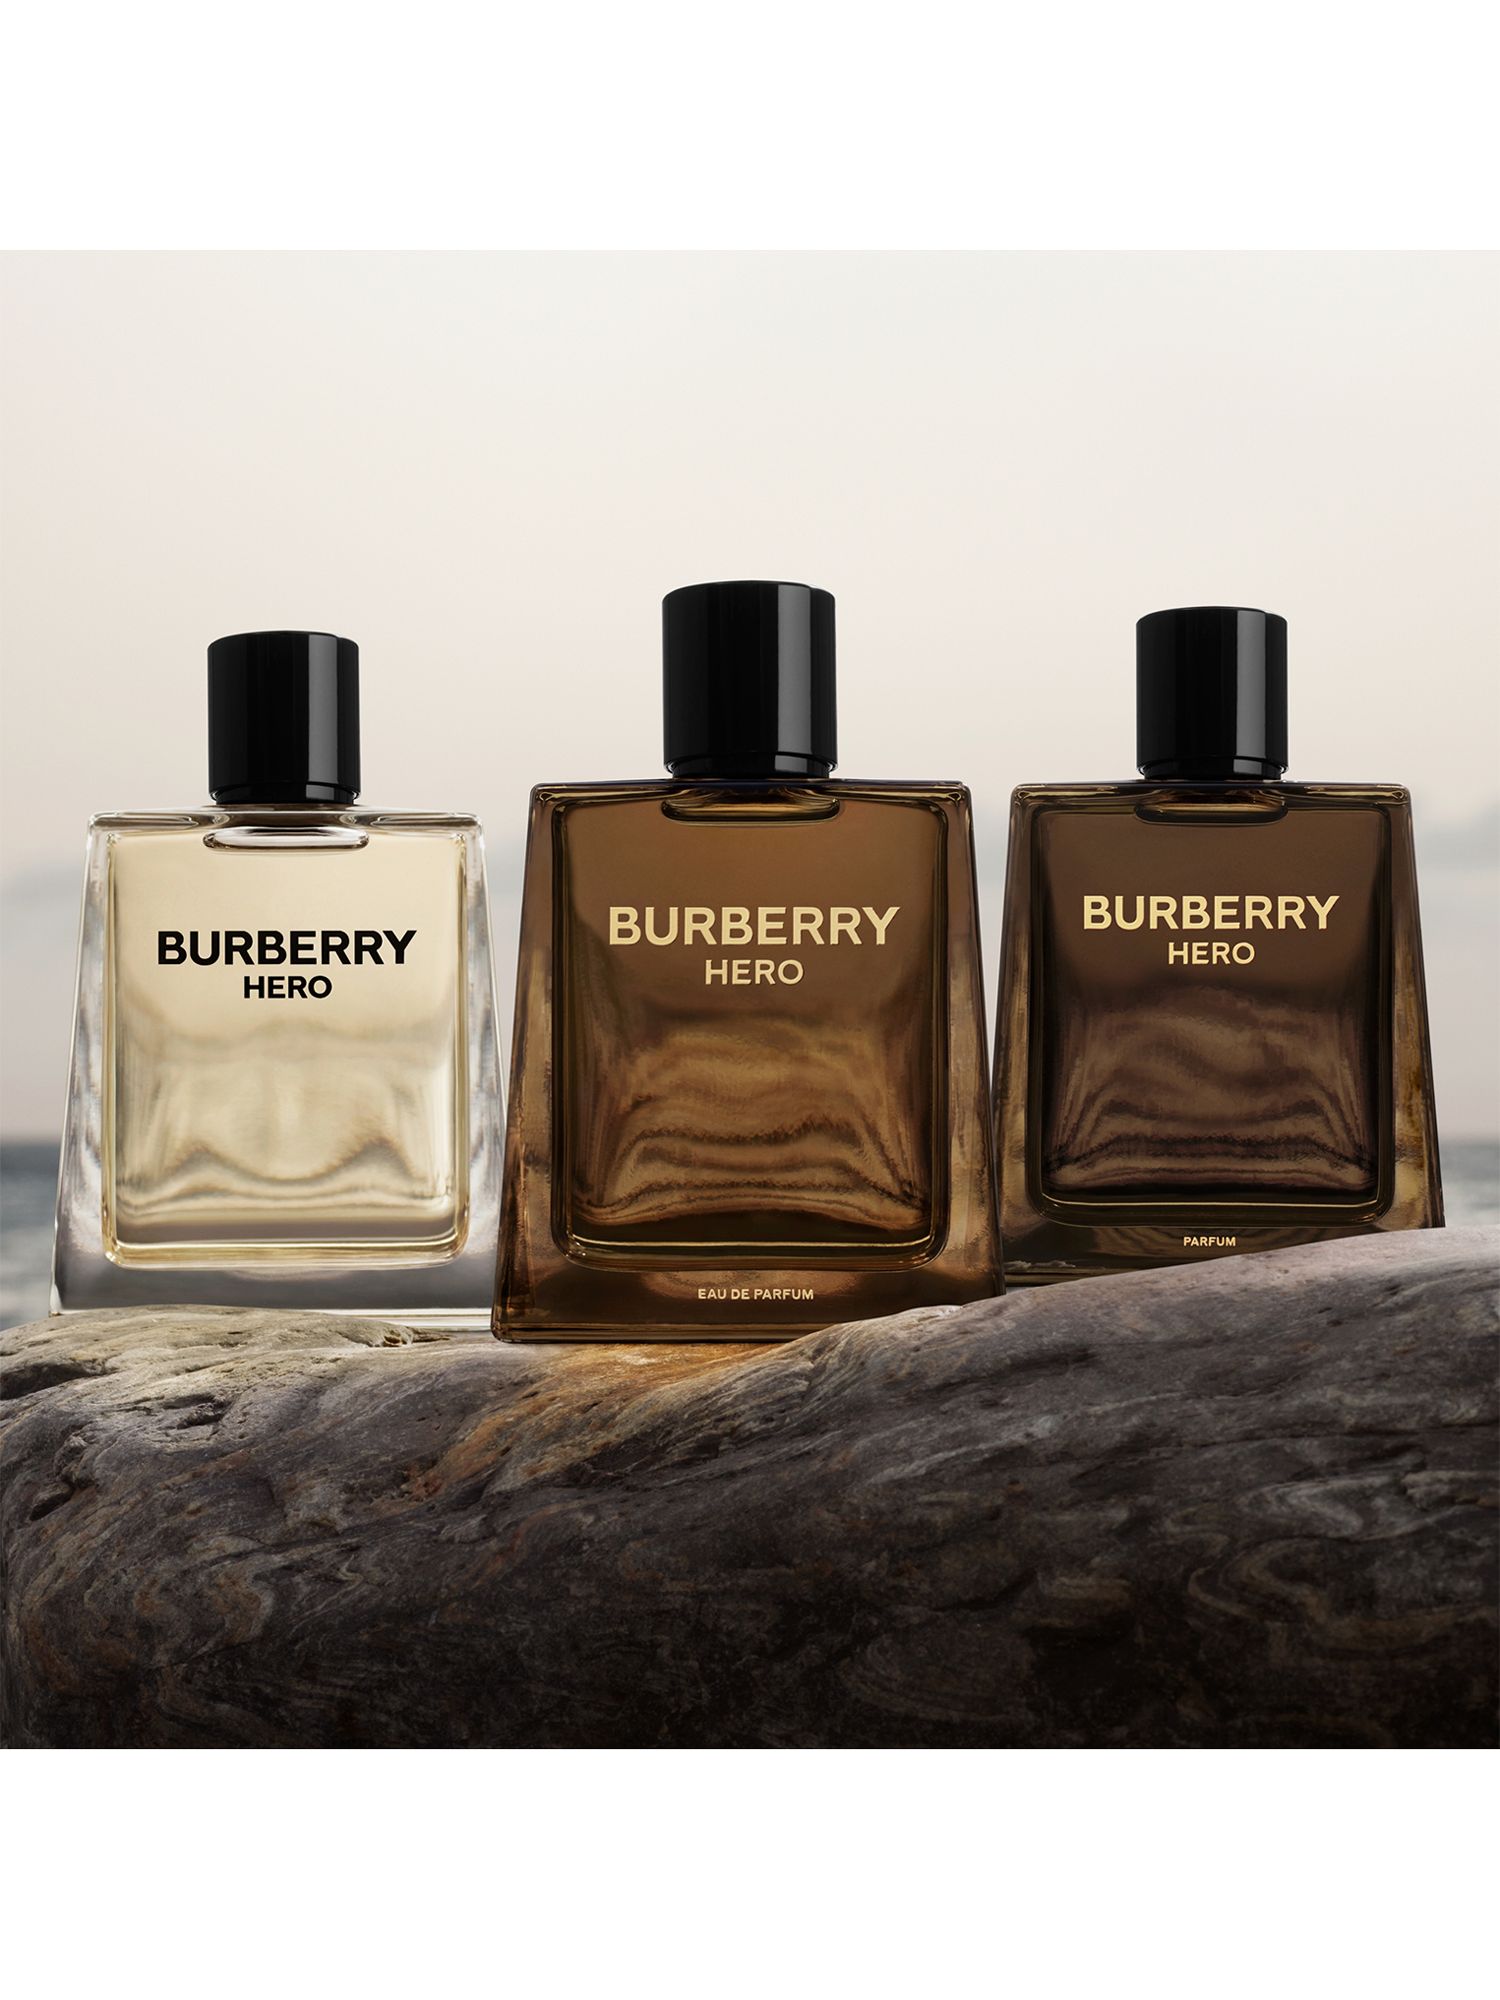 Burberry Hero Eau de Parfum, 50ml